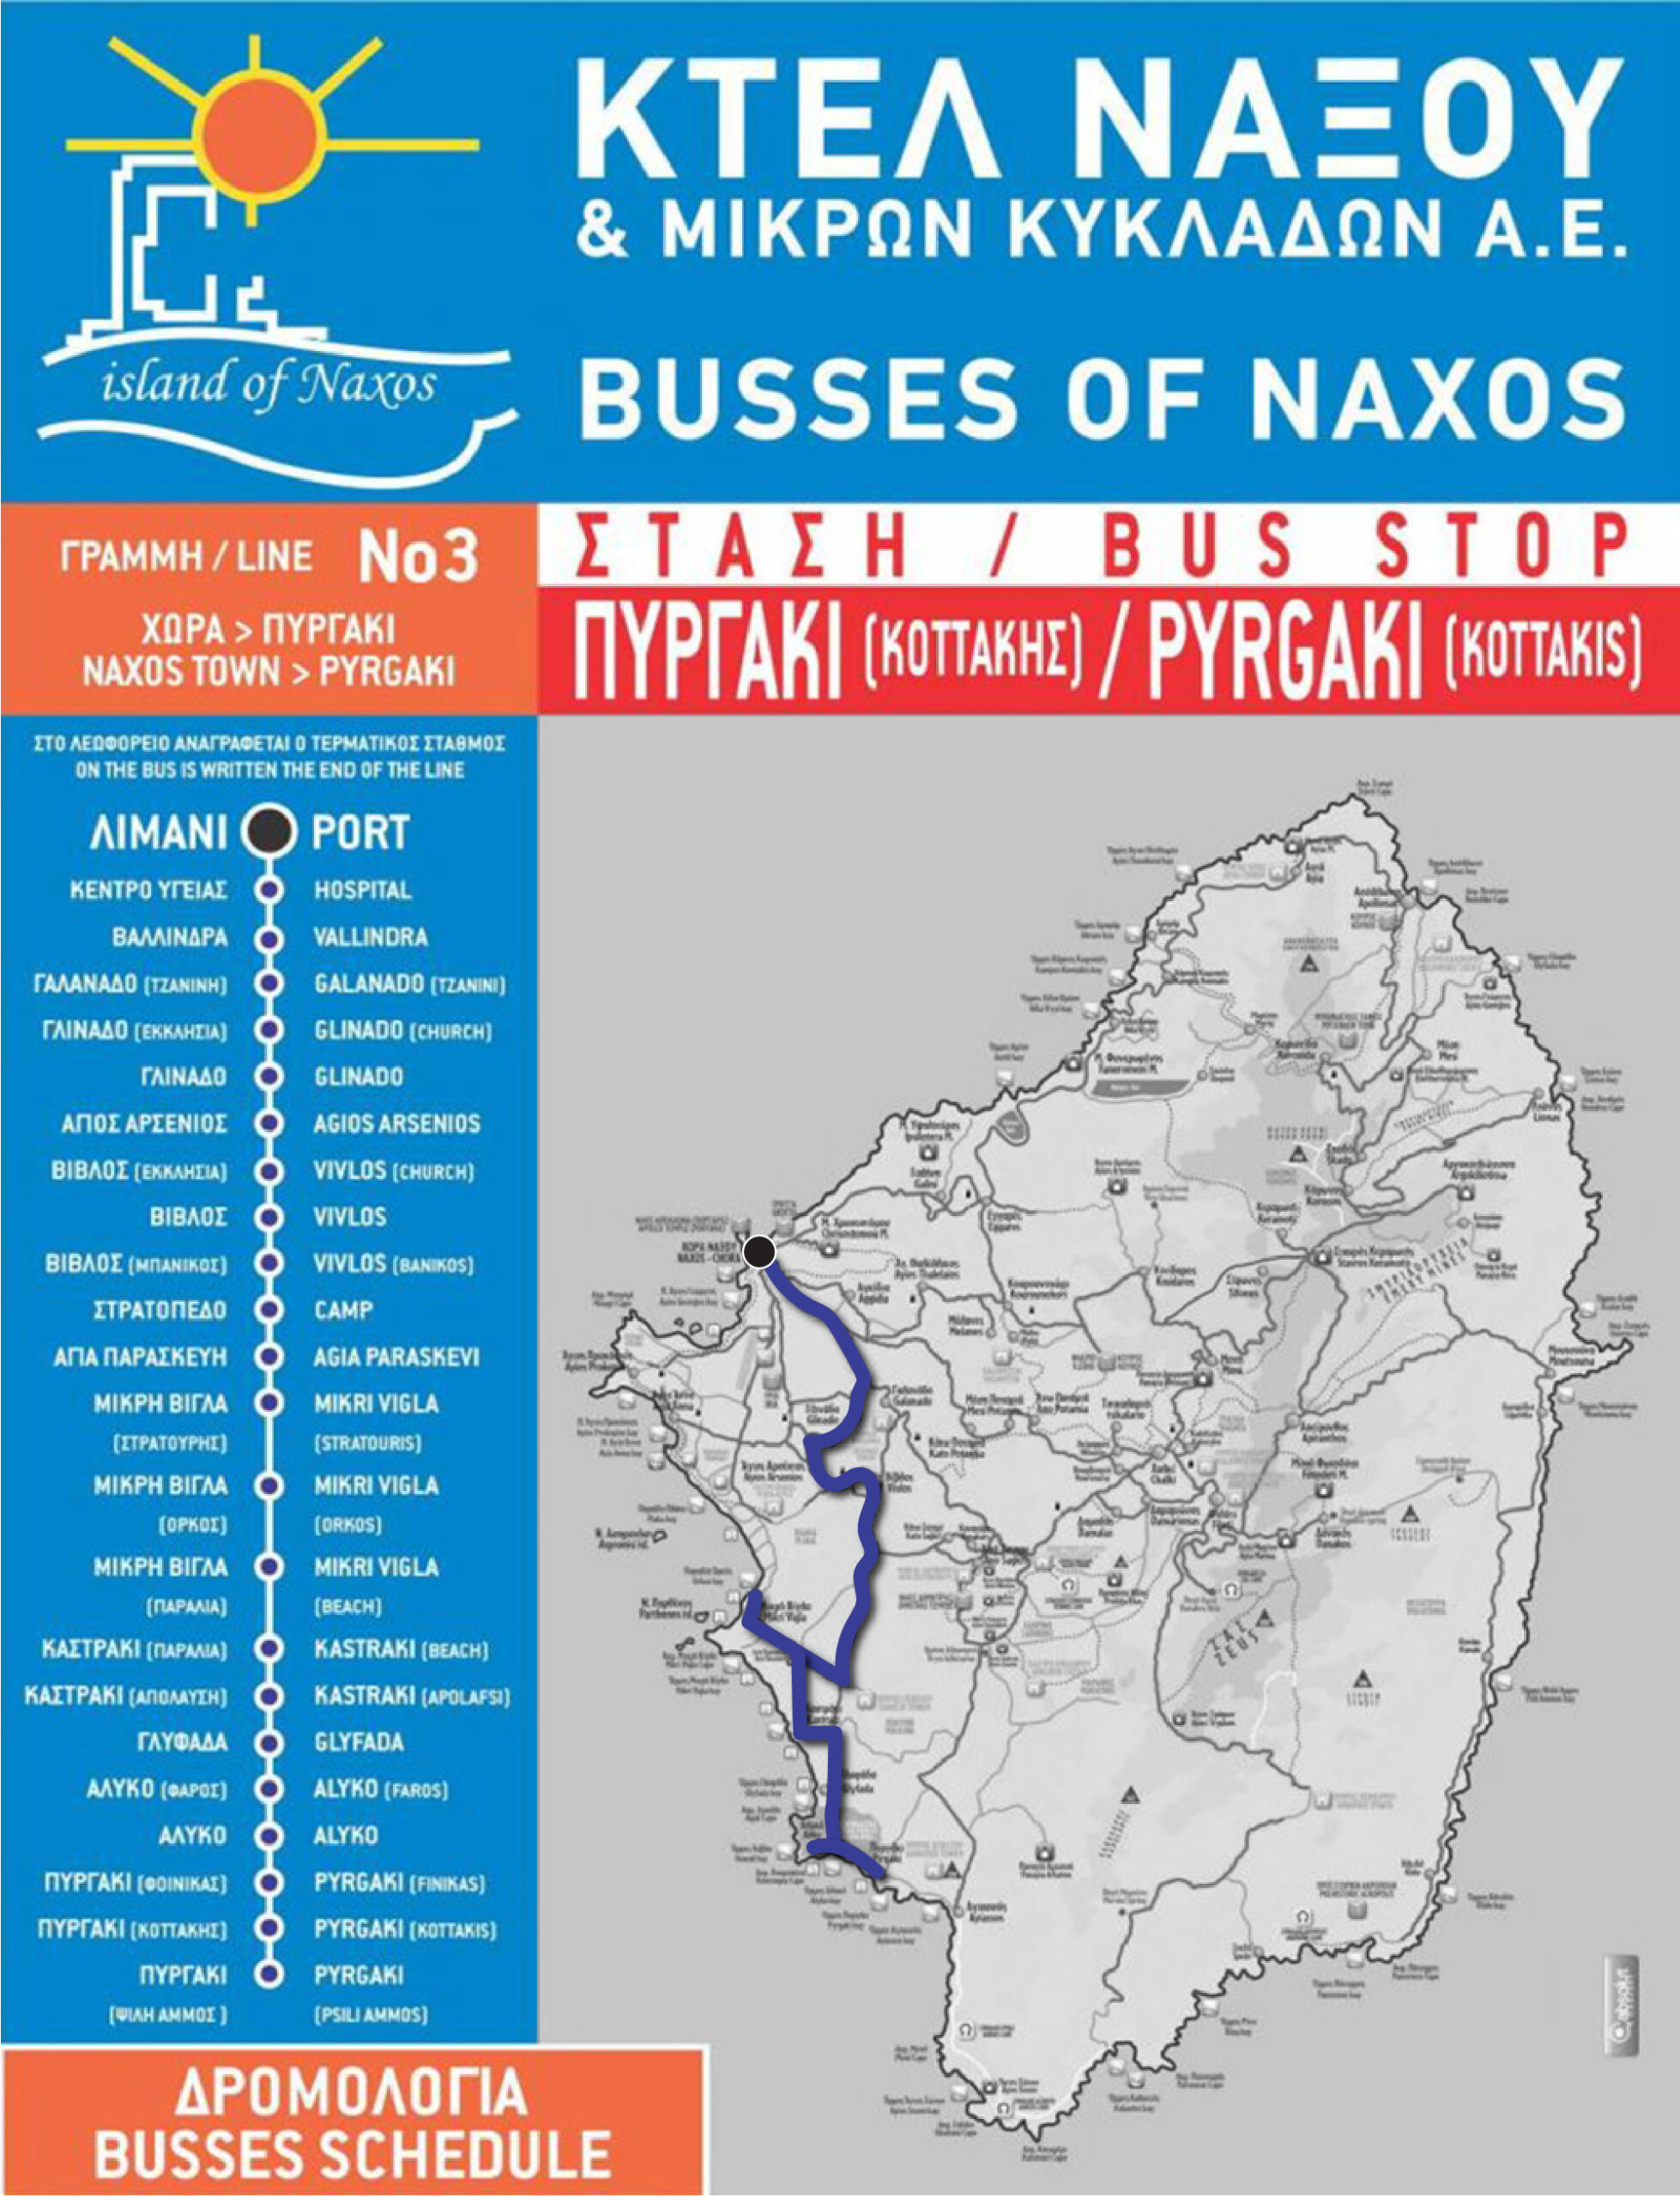 Naxos bus route #3.